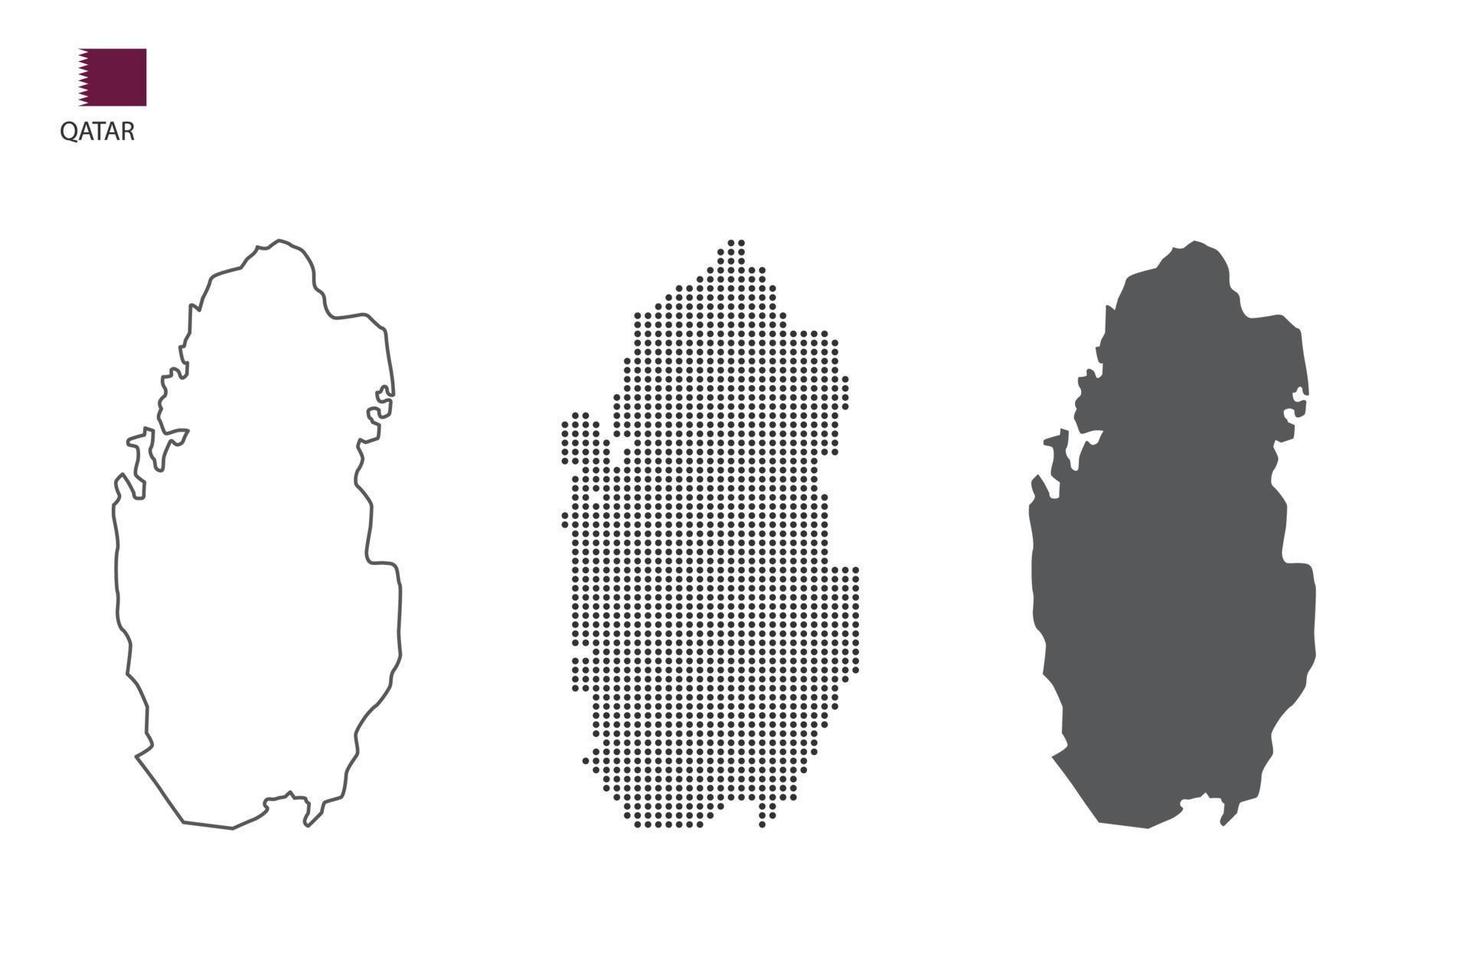 3 versões do vetor da cidade do mapa do catar pelo estilo de simplicidade de contorno preto fino, estilo de ponto preto e estilo de sombra escura. tudo no fundo branco.